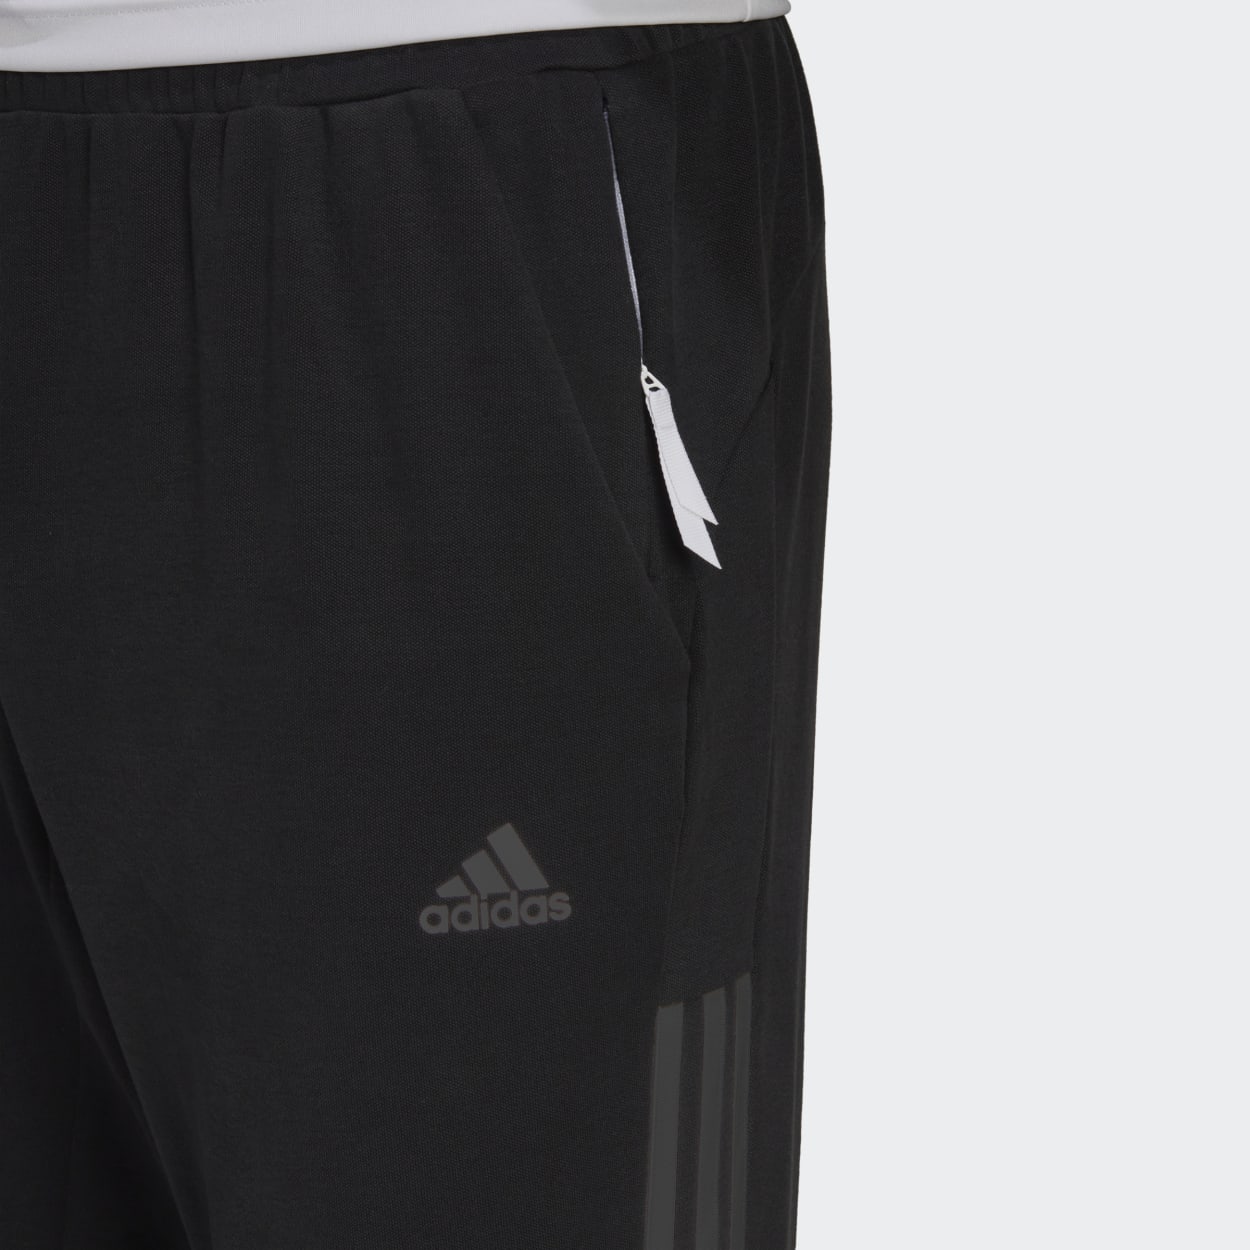 FOOTBALL Adidas FCB SSP - Jogging Pants - Men's - ntnavy - Private Sport  Shop